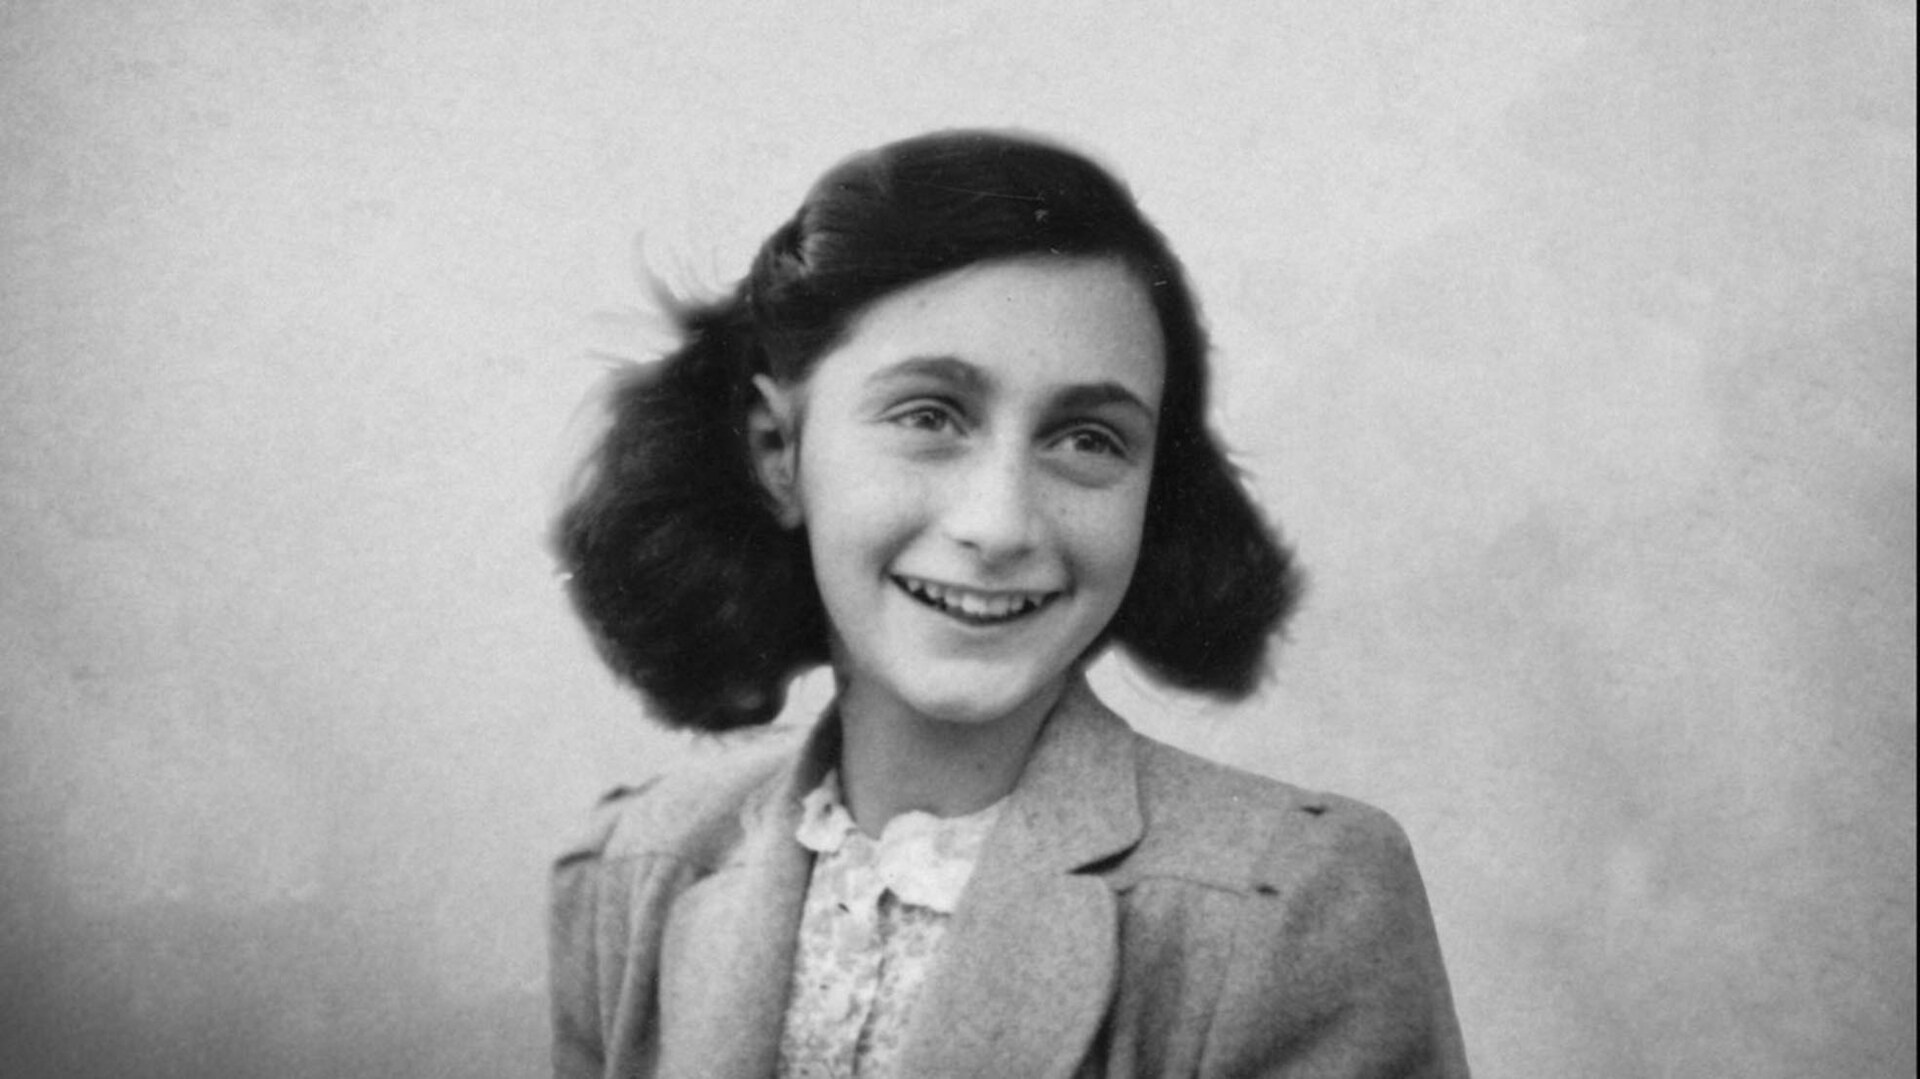 Víctima. La historia de Ana Frank es una de las más estremecedoras de la Segunda Guerra Mundial.